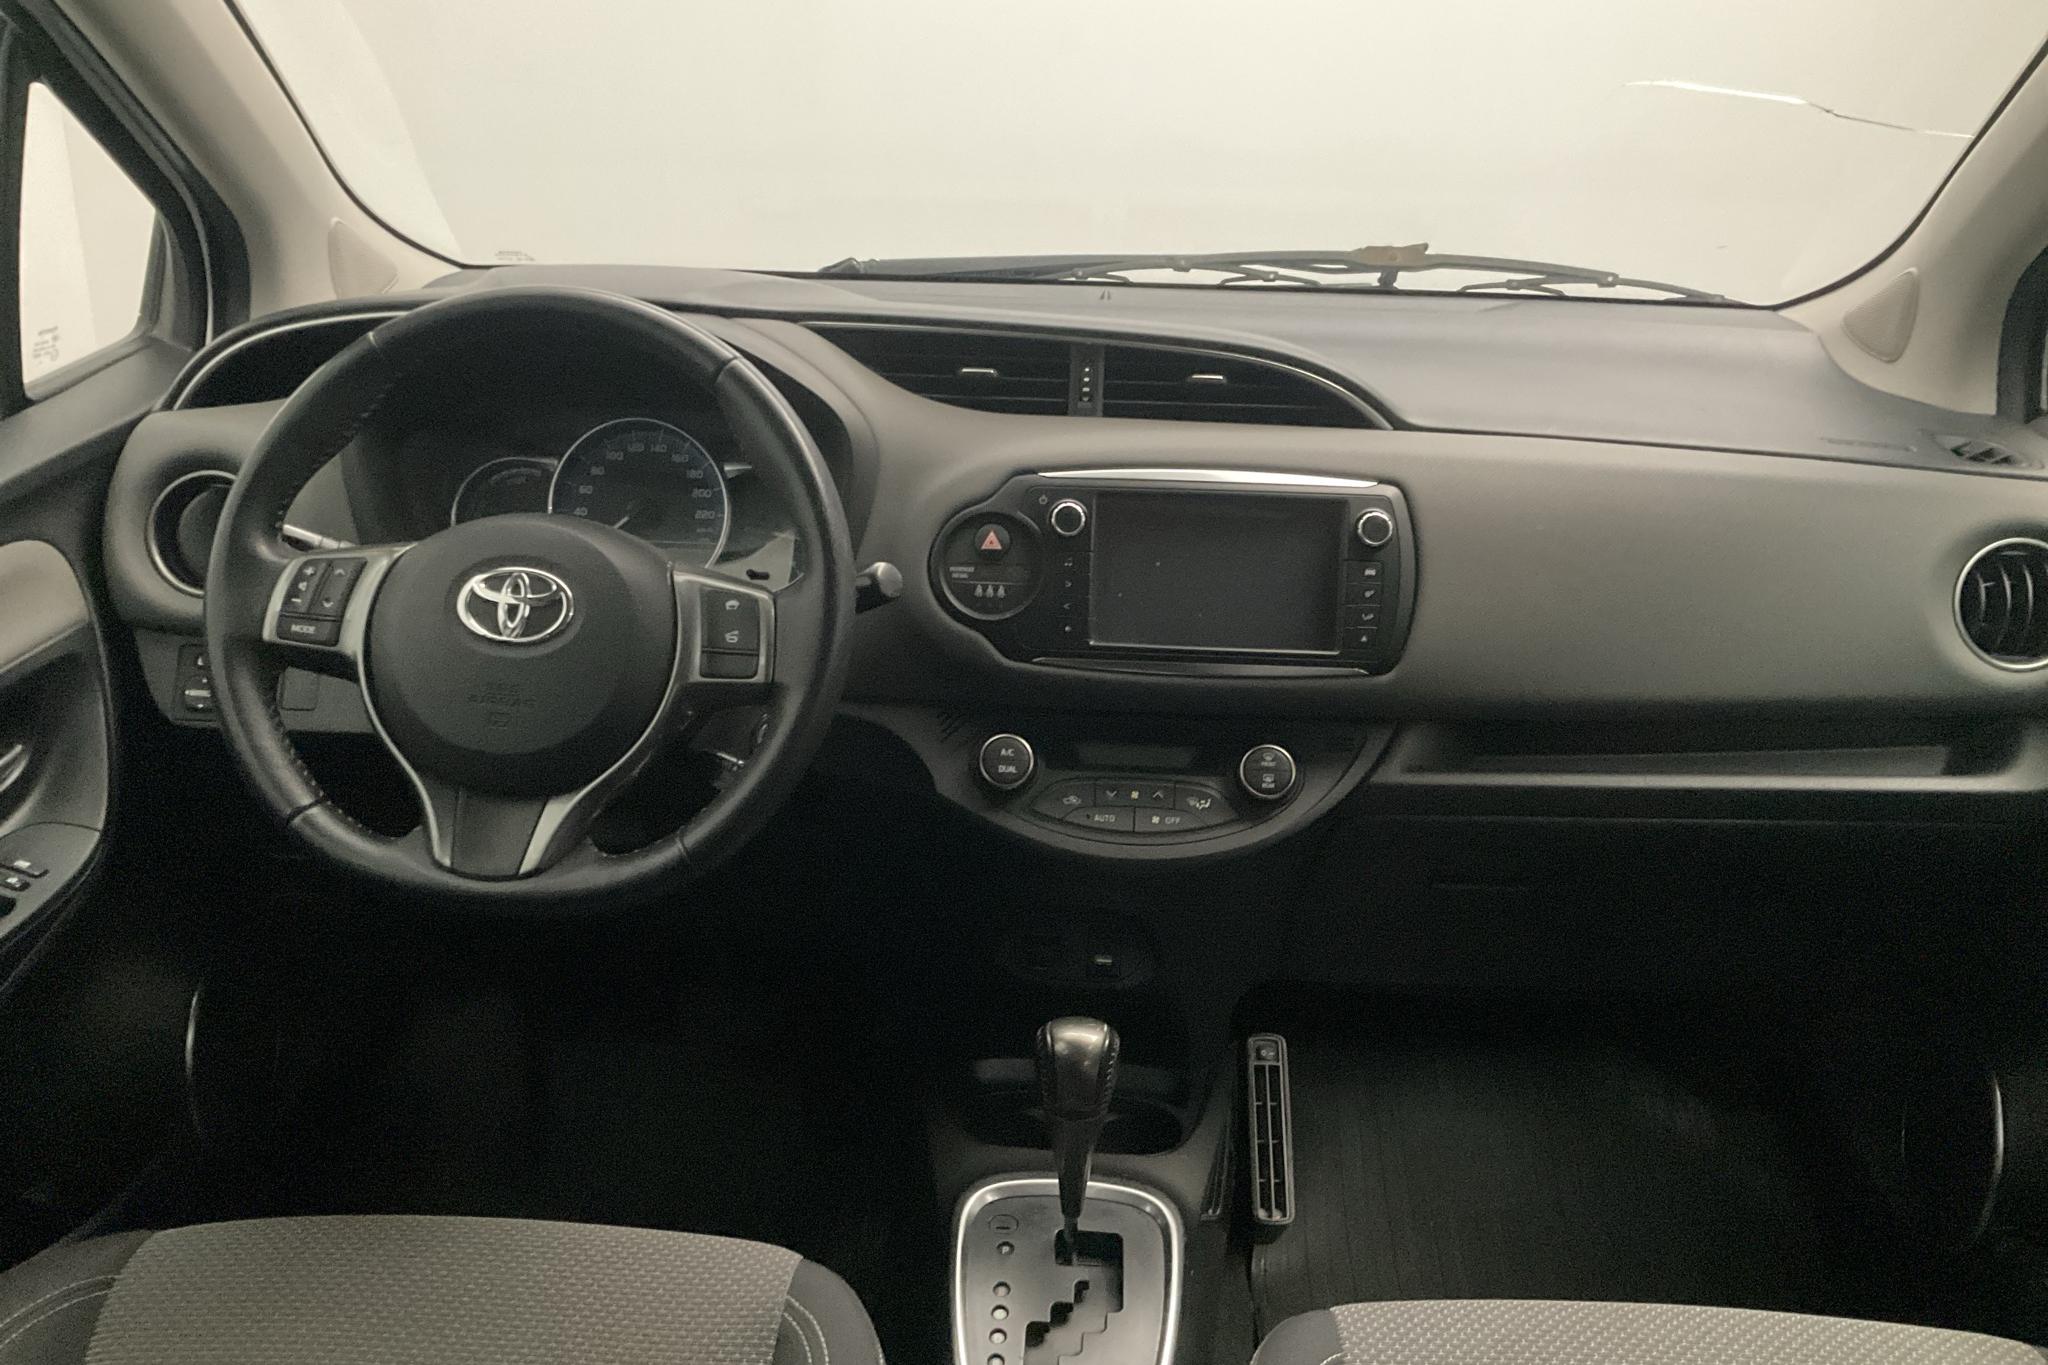 Toyota Yaris 1.5 HSD 5dr (75hk) - 108 100 km - Automatic - white - 2015